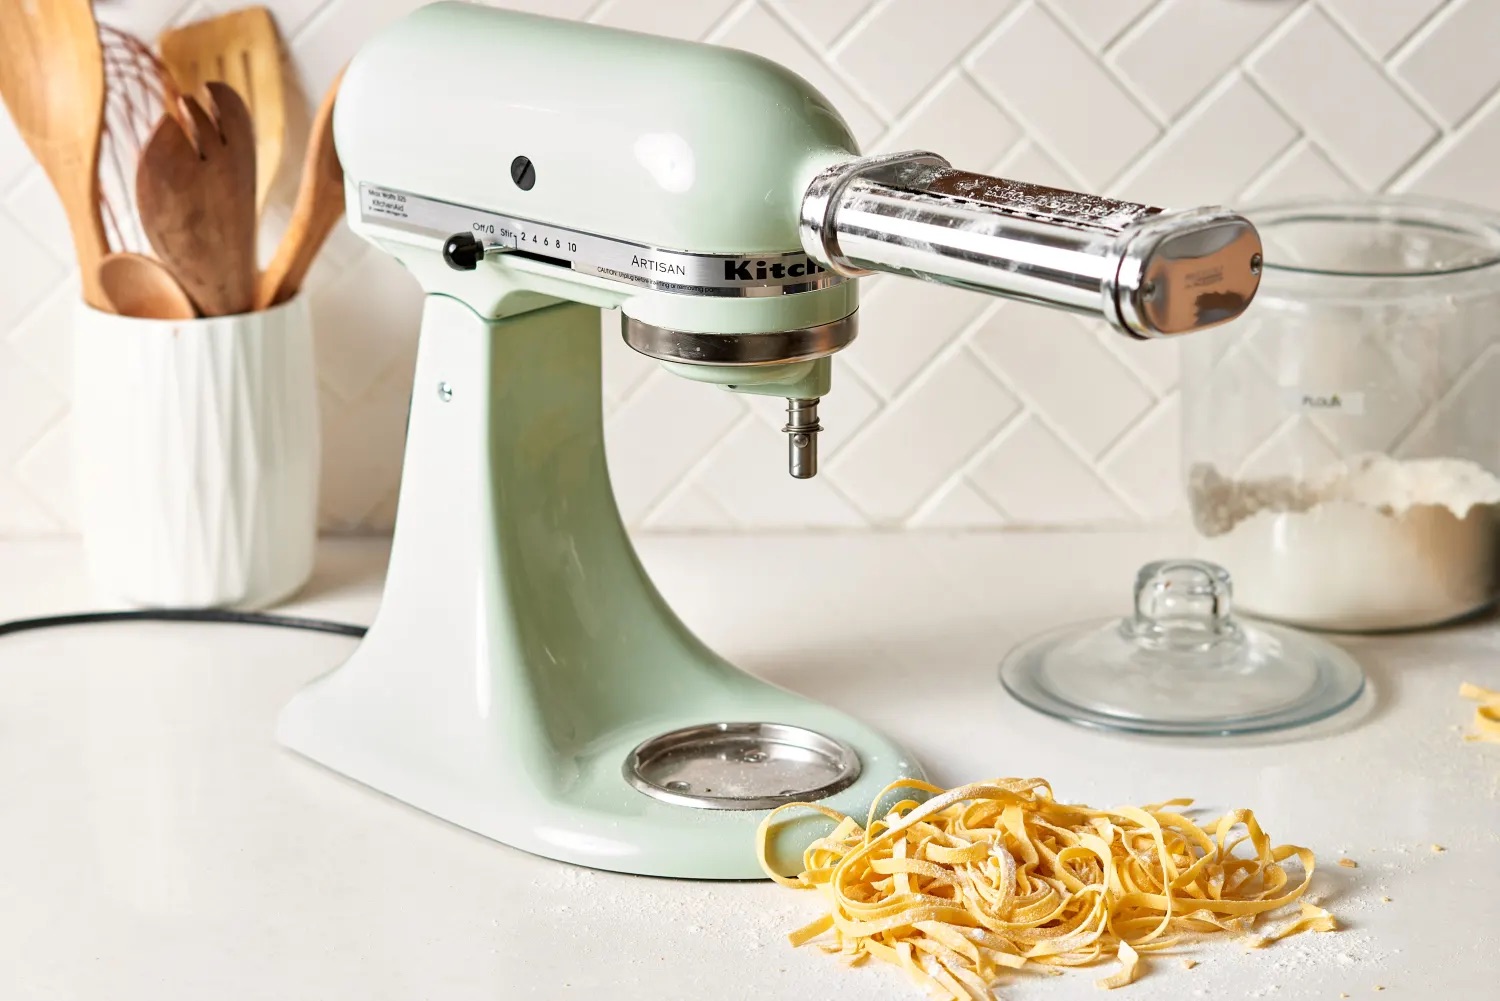 Pasta Attachment for KitchenAid Mixer, Includes Pasta Sheet Roller,  Spaghetti Fettuccine Cutter, 3Pcs for Pasta Attachment by HOZODO